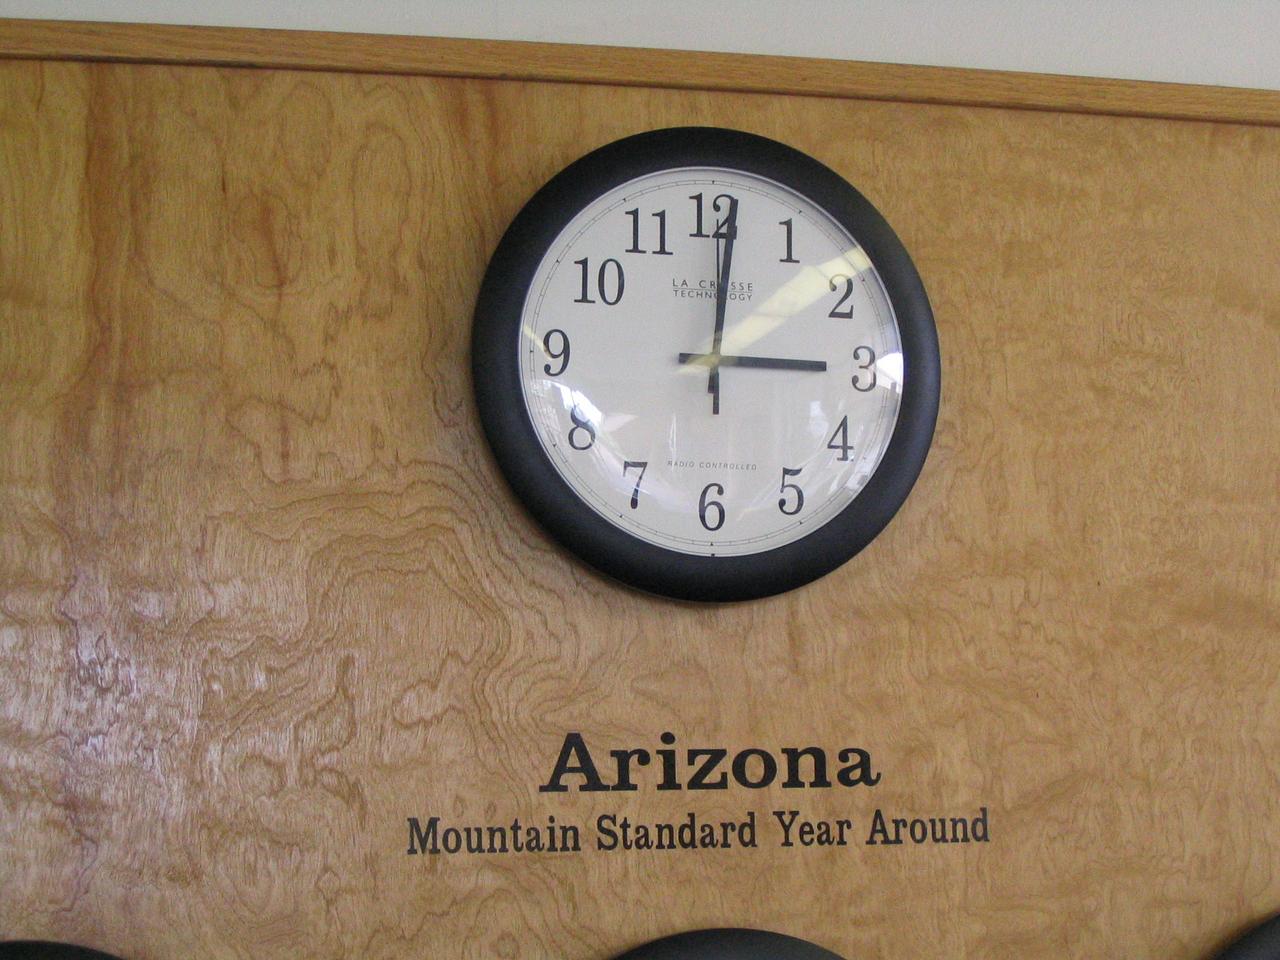 Arizona and Daylight Savings